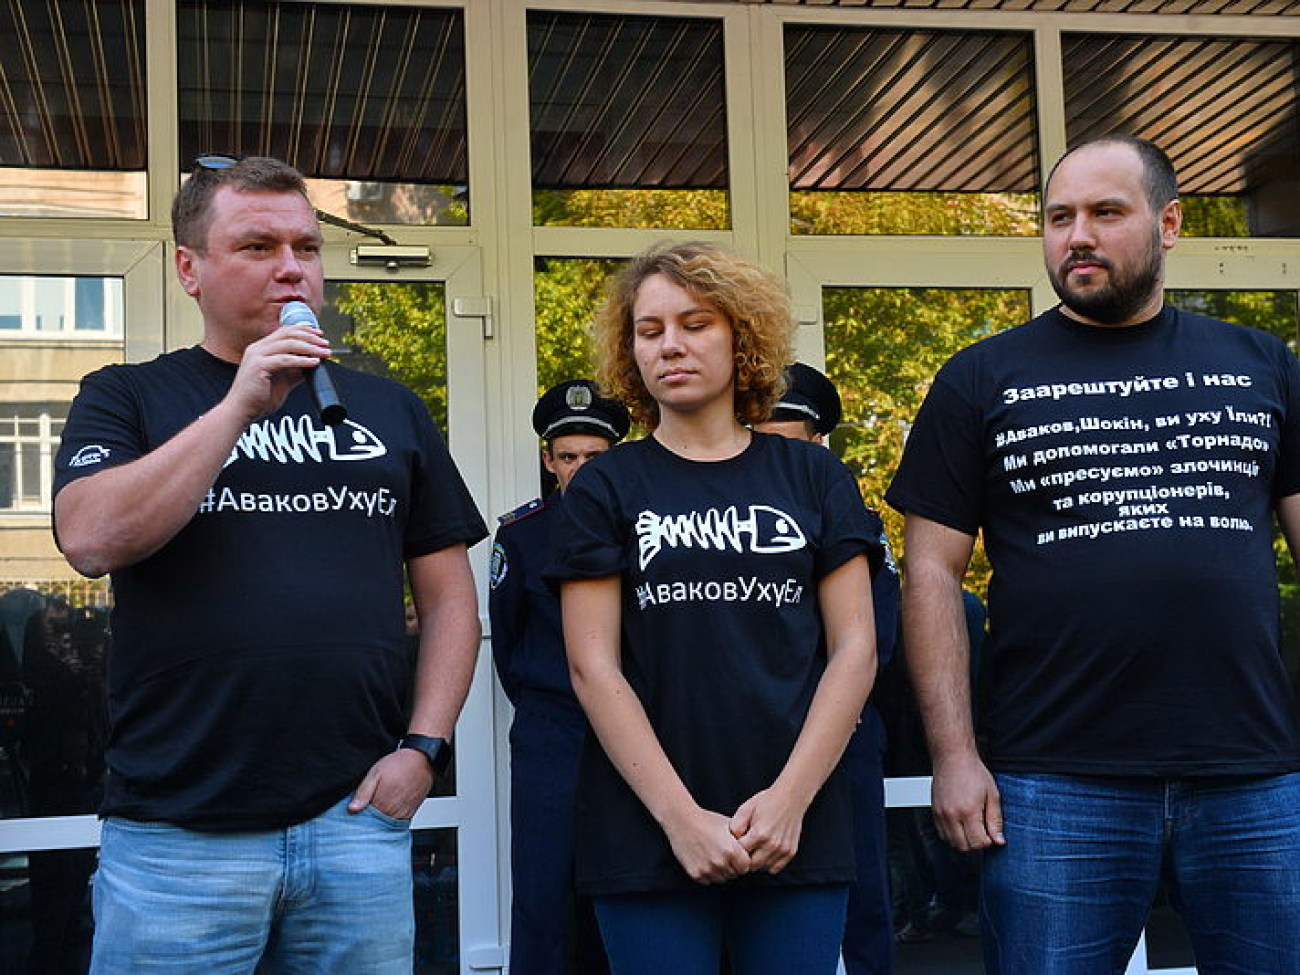 Активисты варили для Авакова уху